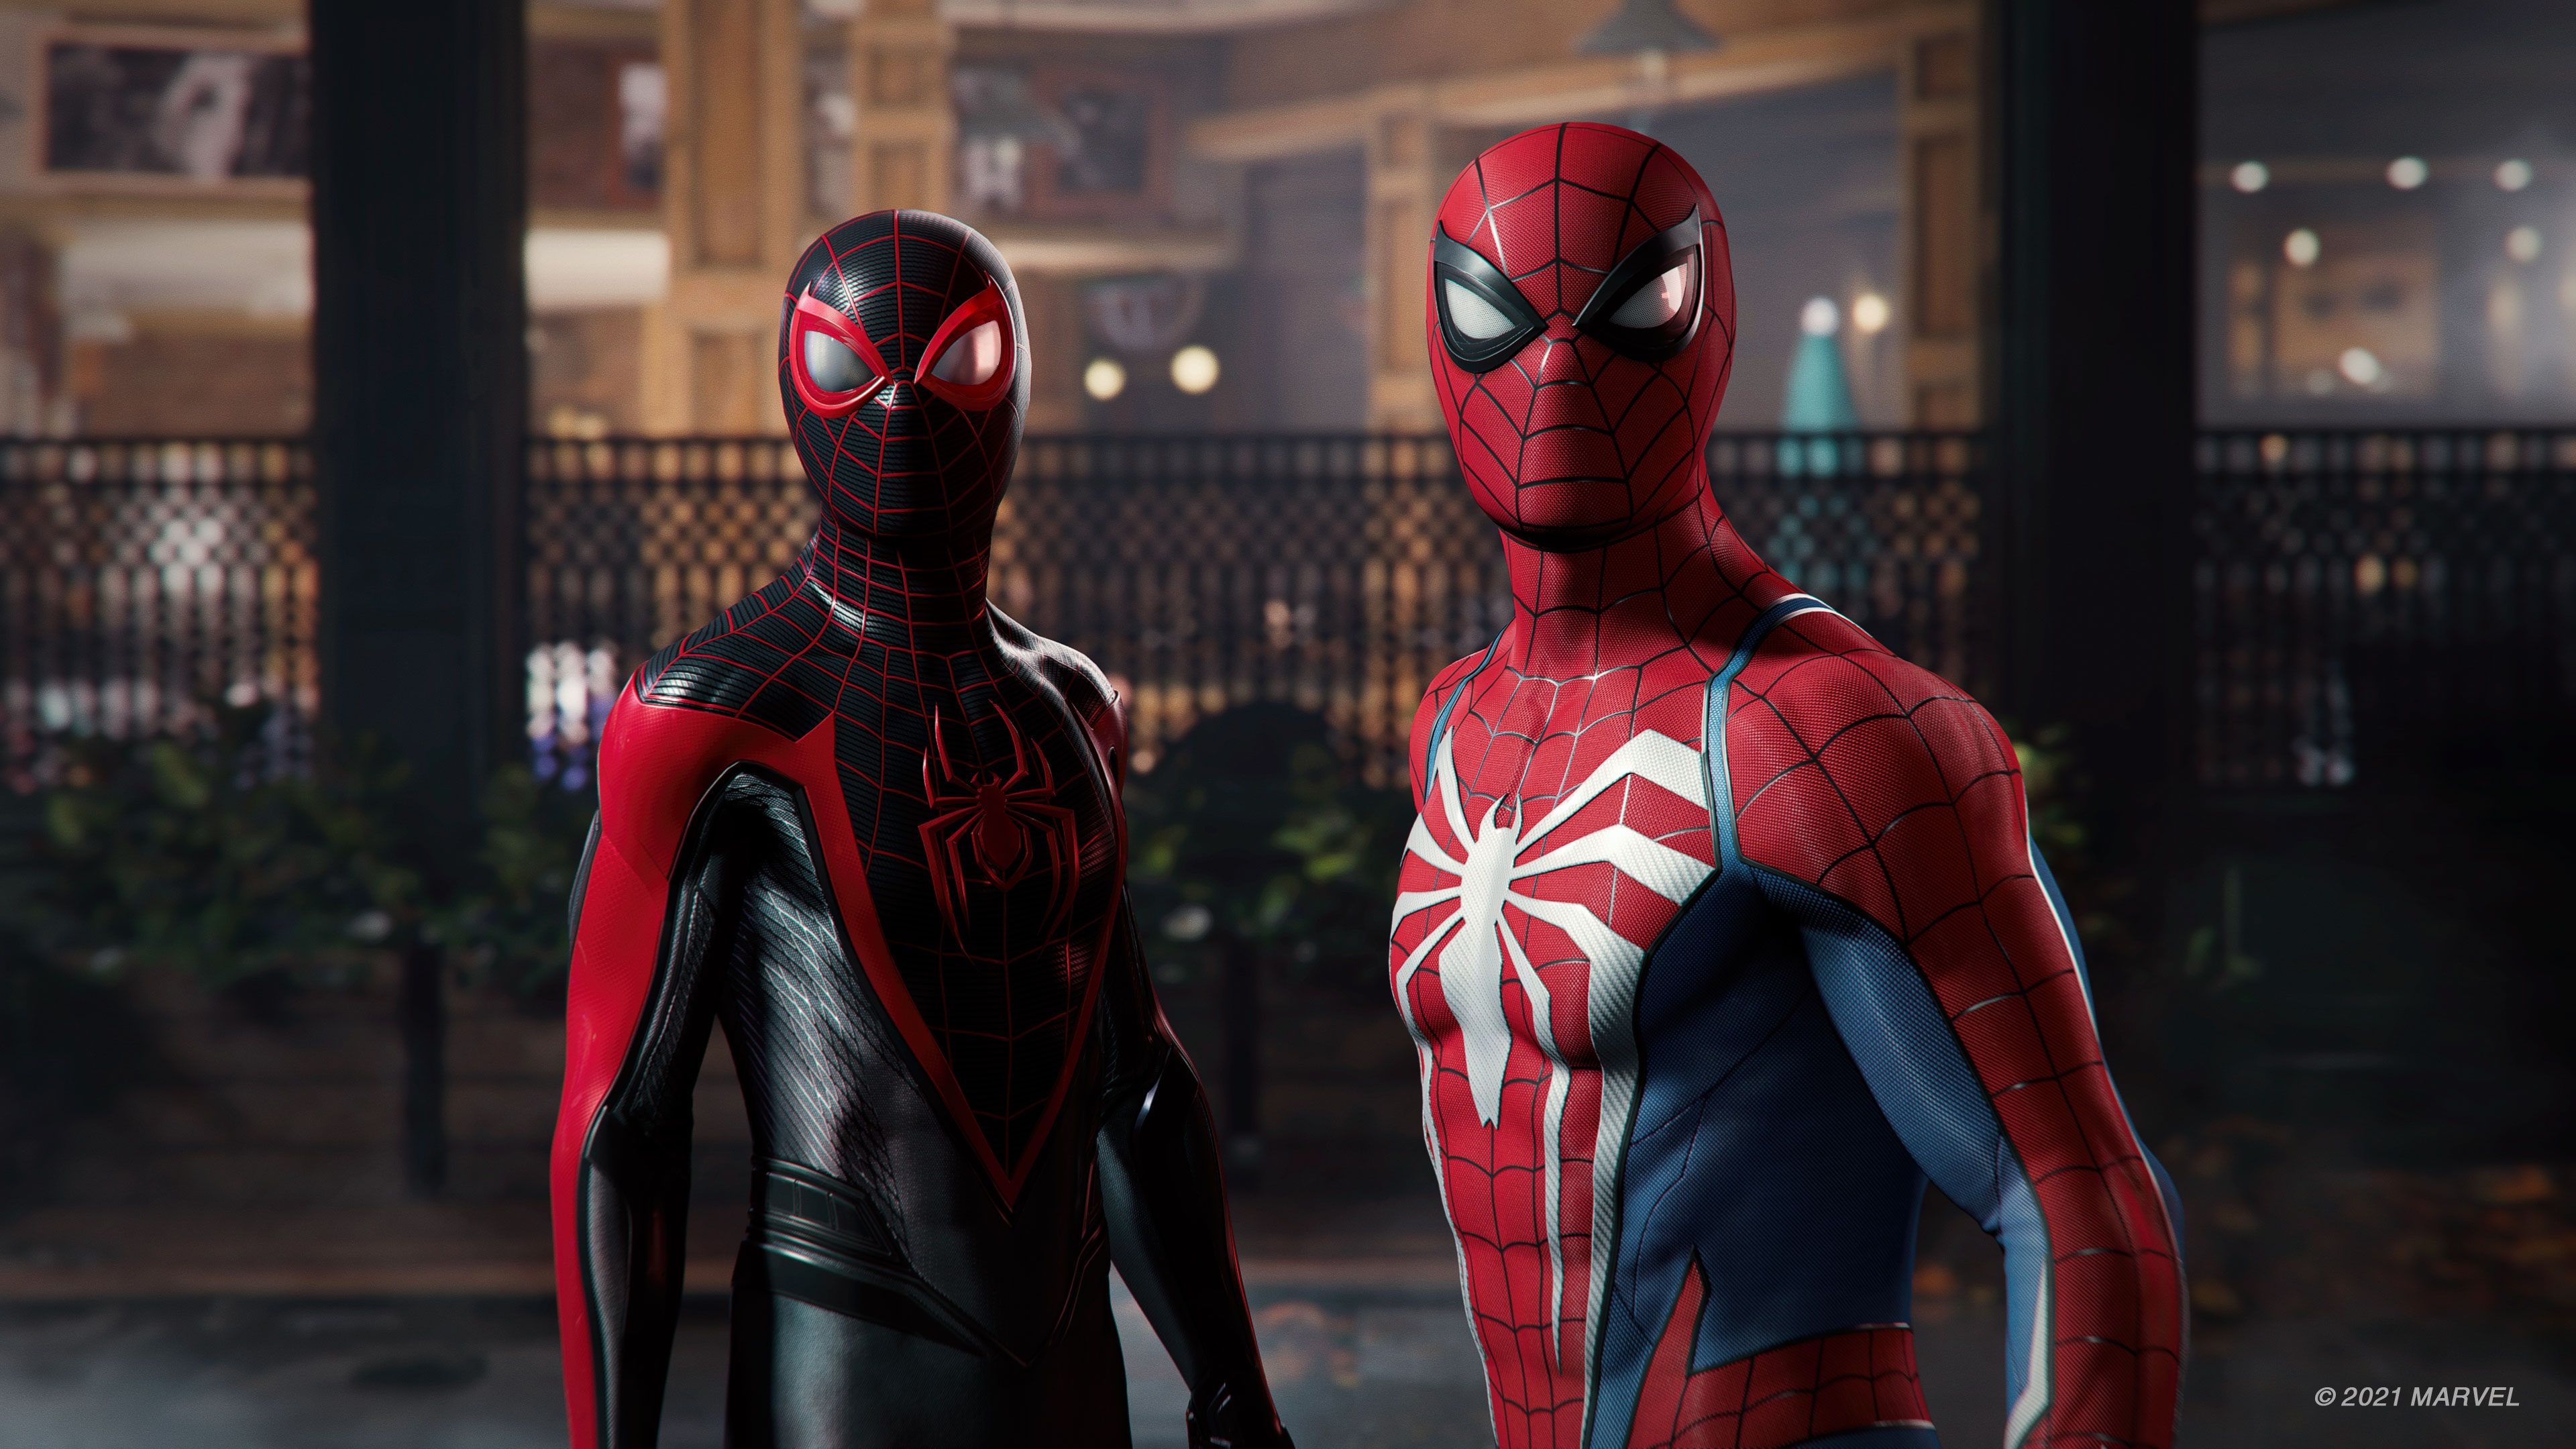 Console PlayStation 5 Edição Limitada Marvel's Spider Man 2 - PS5